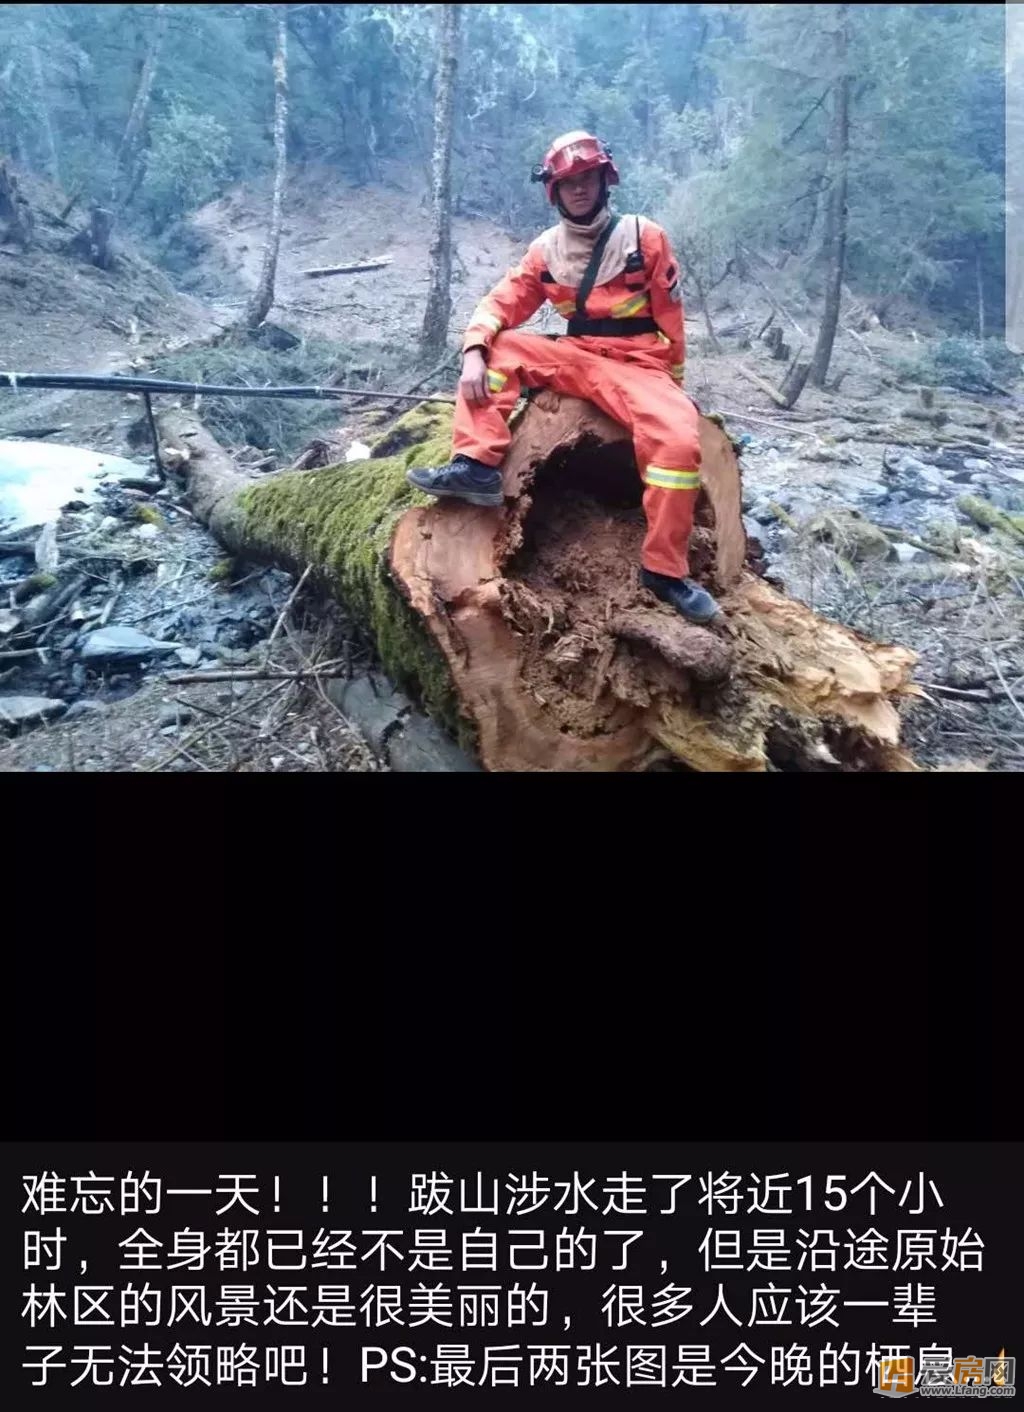 沉痛哀悼3名江西籍消防员在四川凉山森林火灾中牺牲